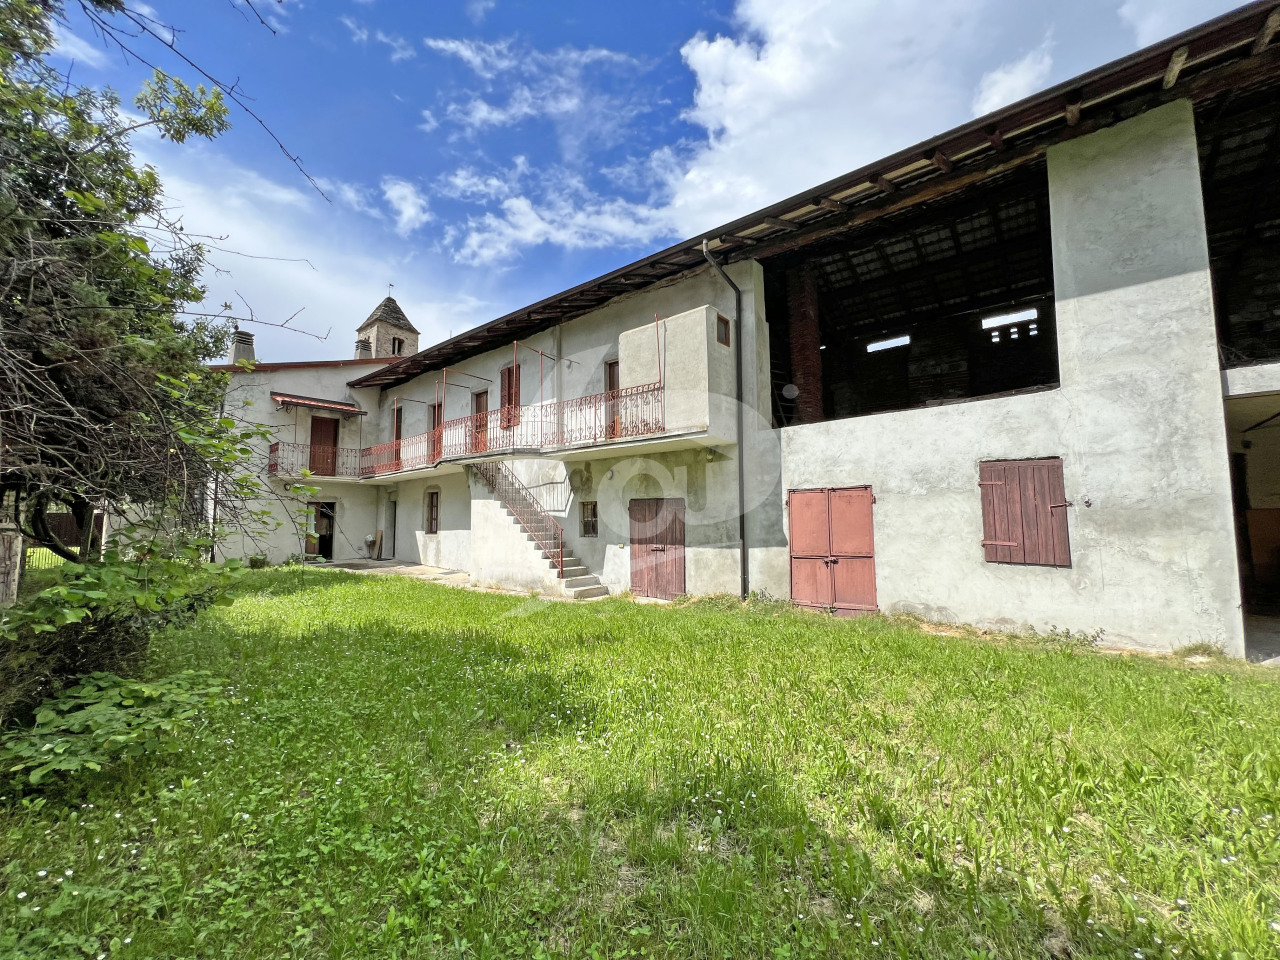 Rustico / Casale in vendita a Leggiuno, 8 locali, prezzo € 265.000 | PortaleAgenzieImmobiliari.it